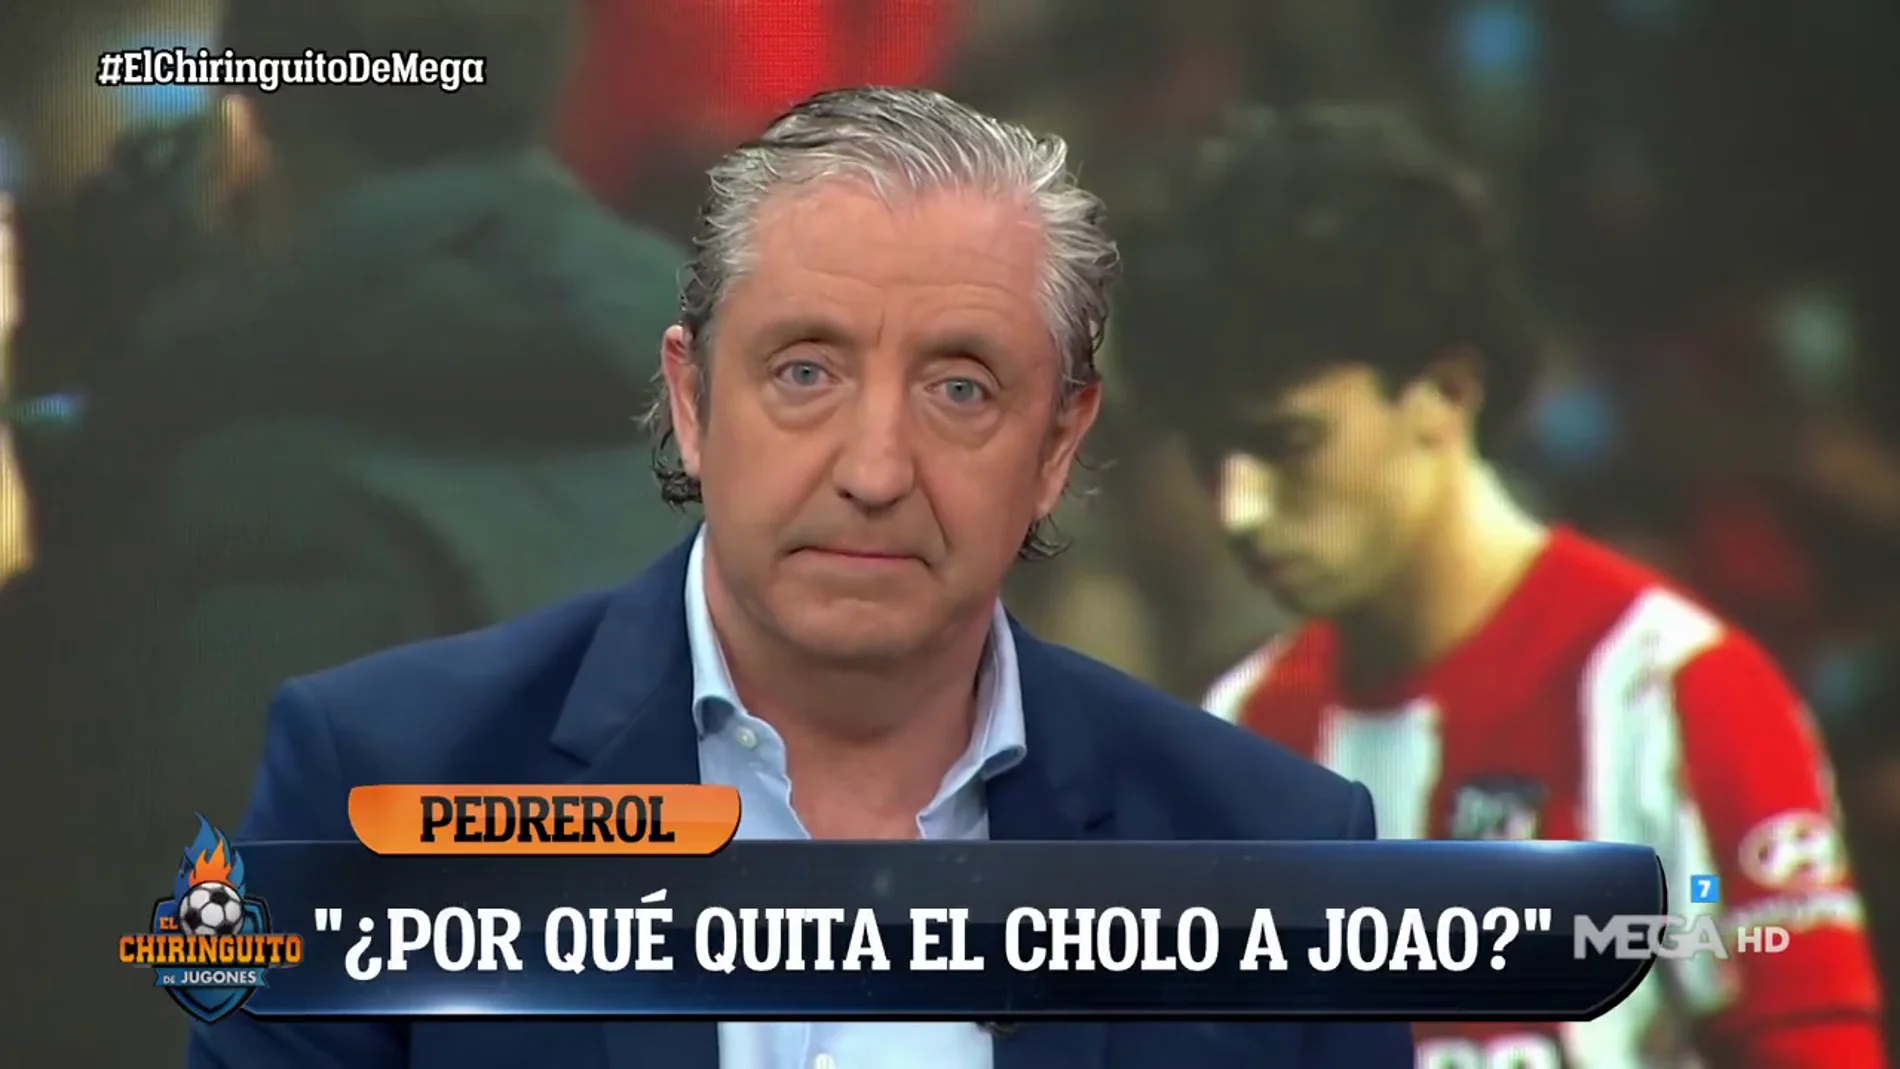 Josep Pedrerol: "¿Por qué quita a Joao si estaba siendo el mejor?"